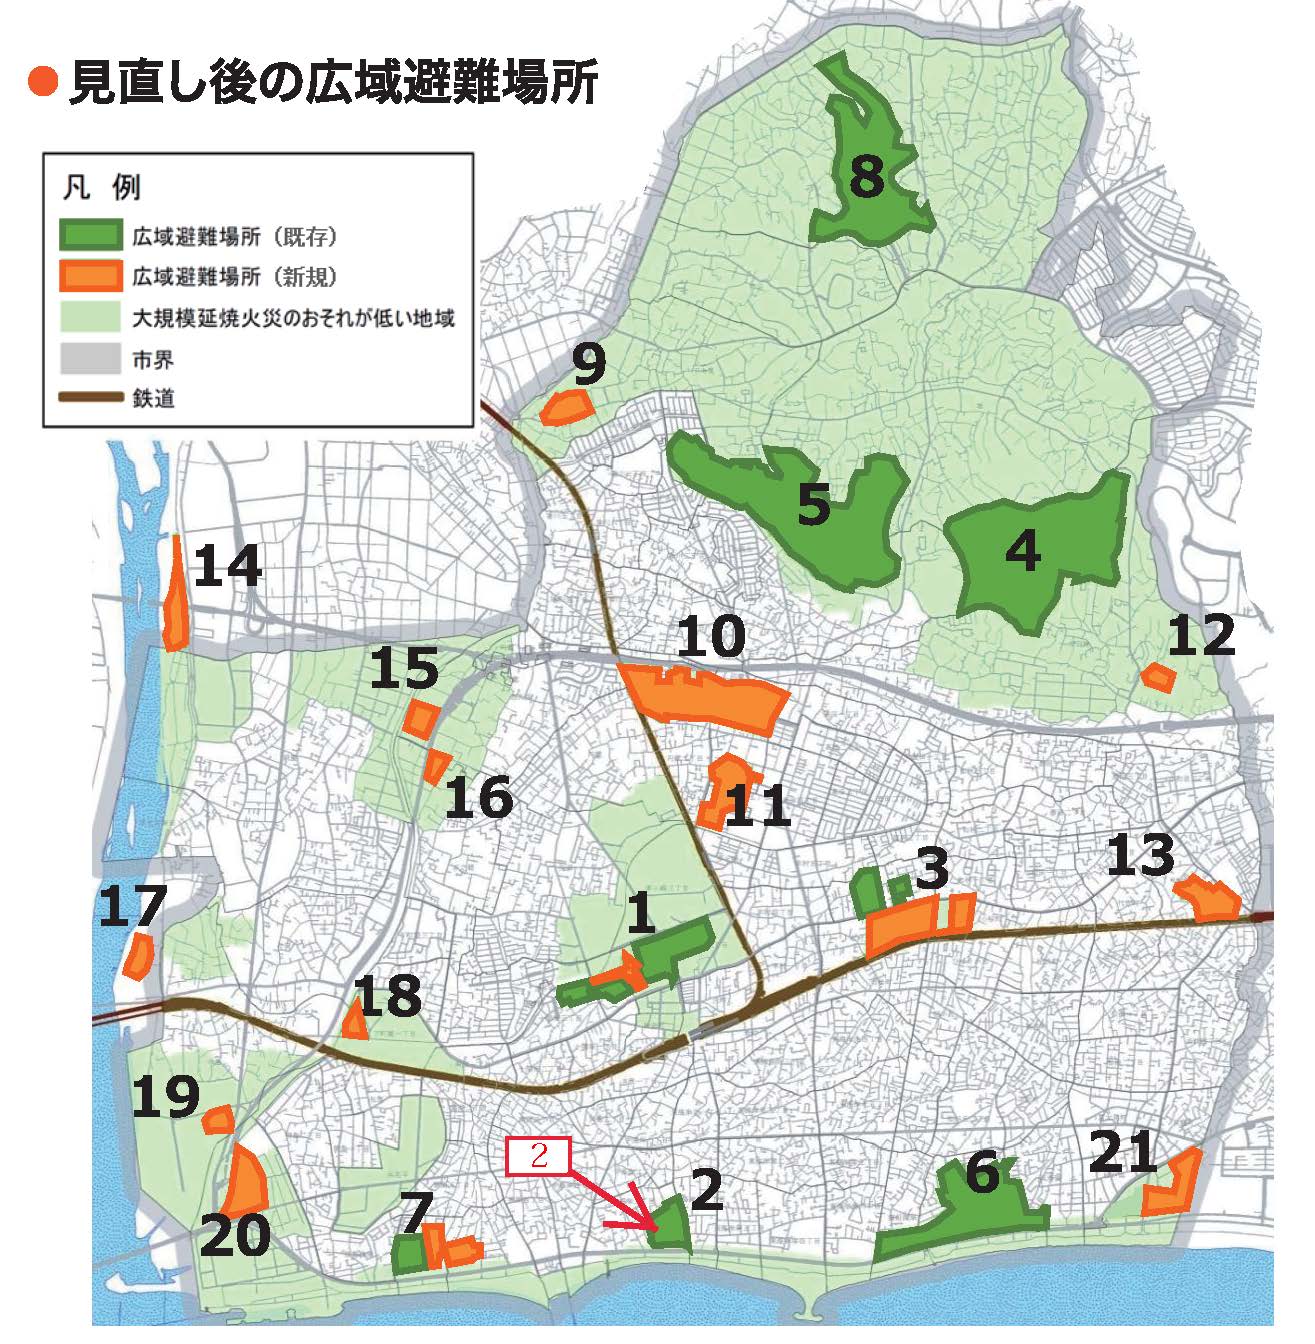 2.広域避難場所_茅ヶ崎市地図